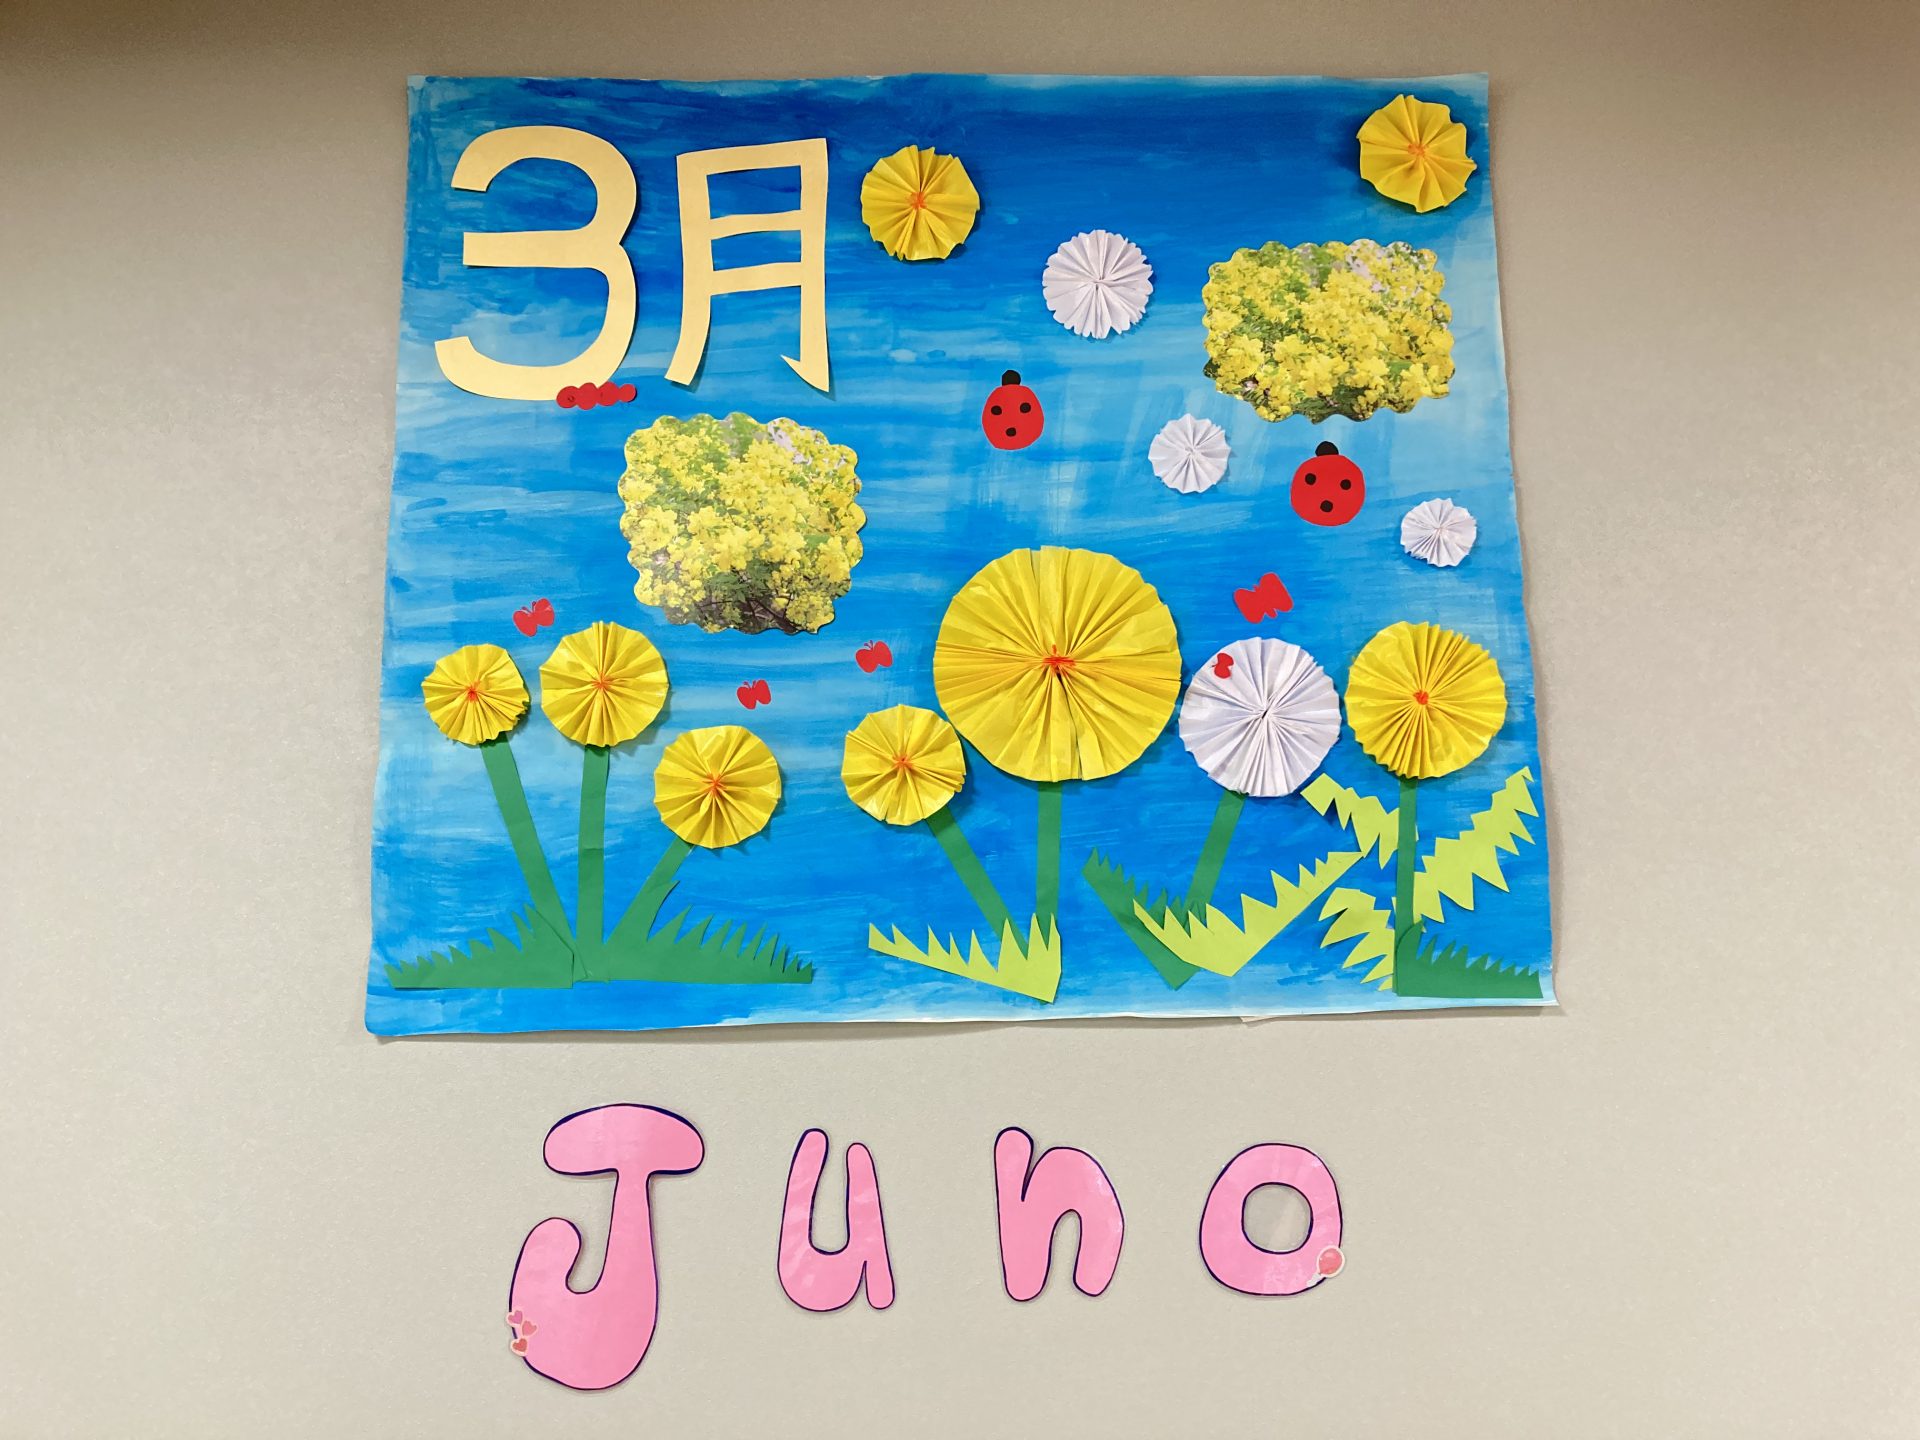 【Juno】壁画制作✨